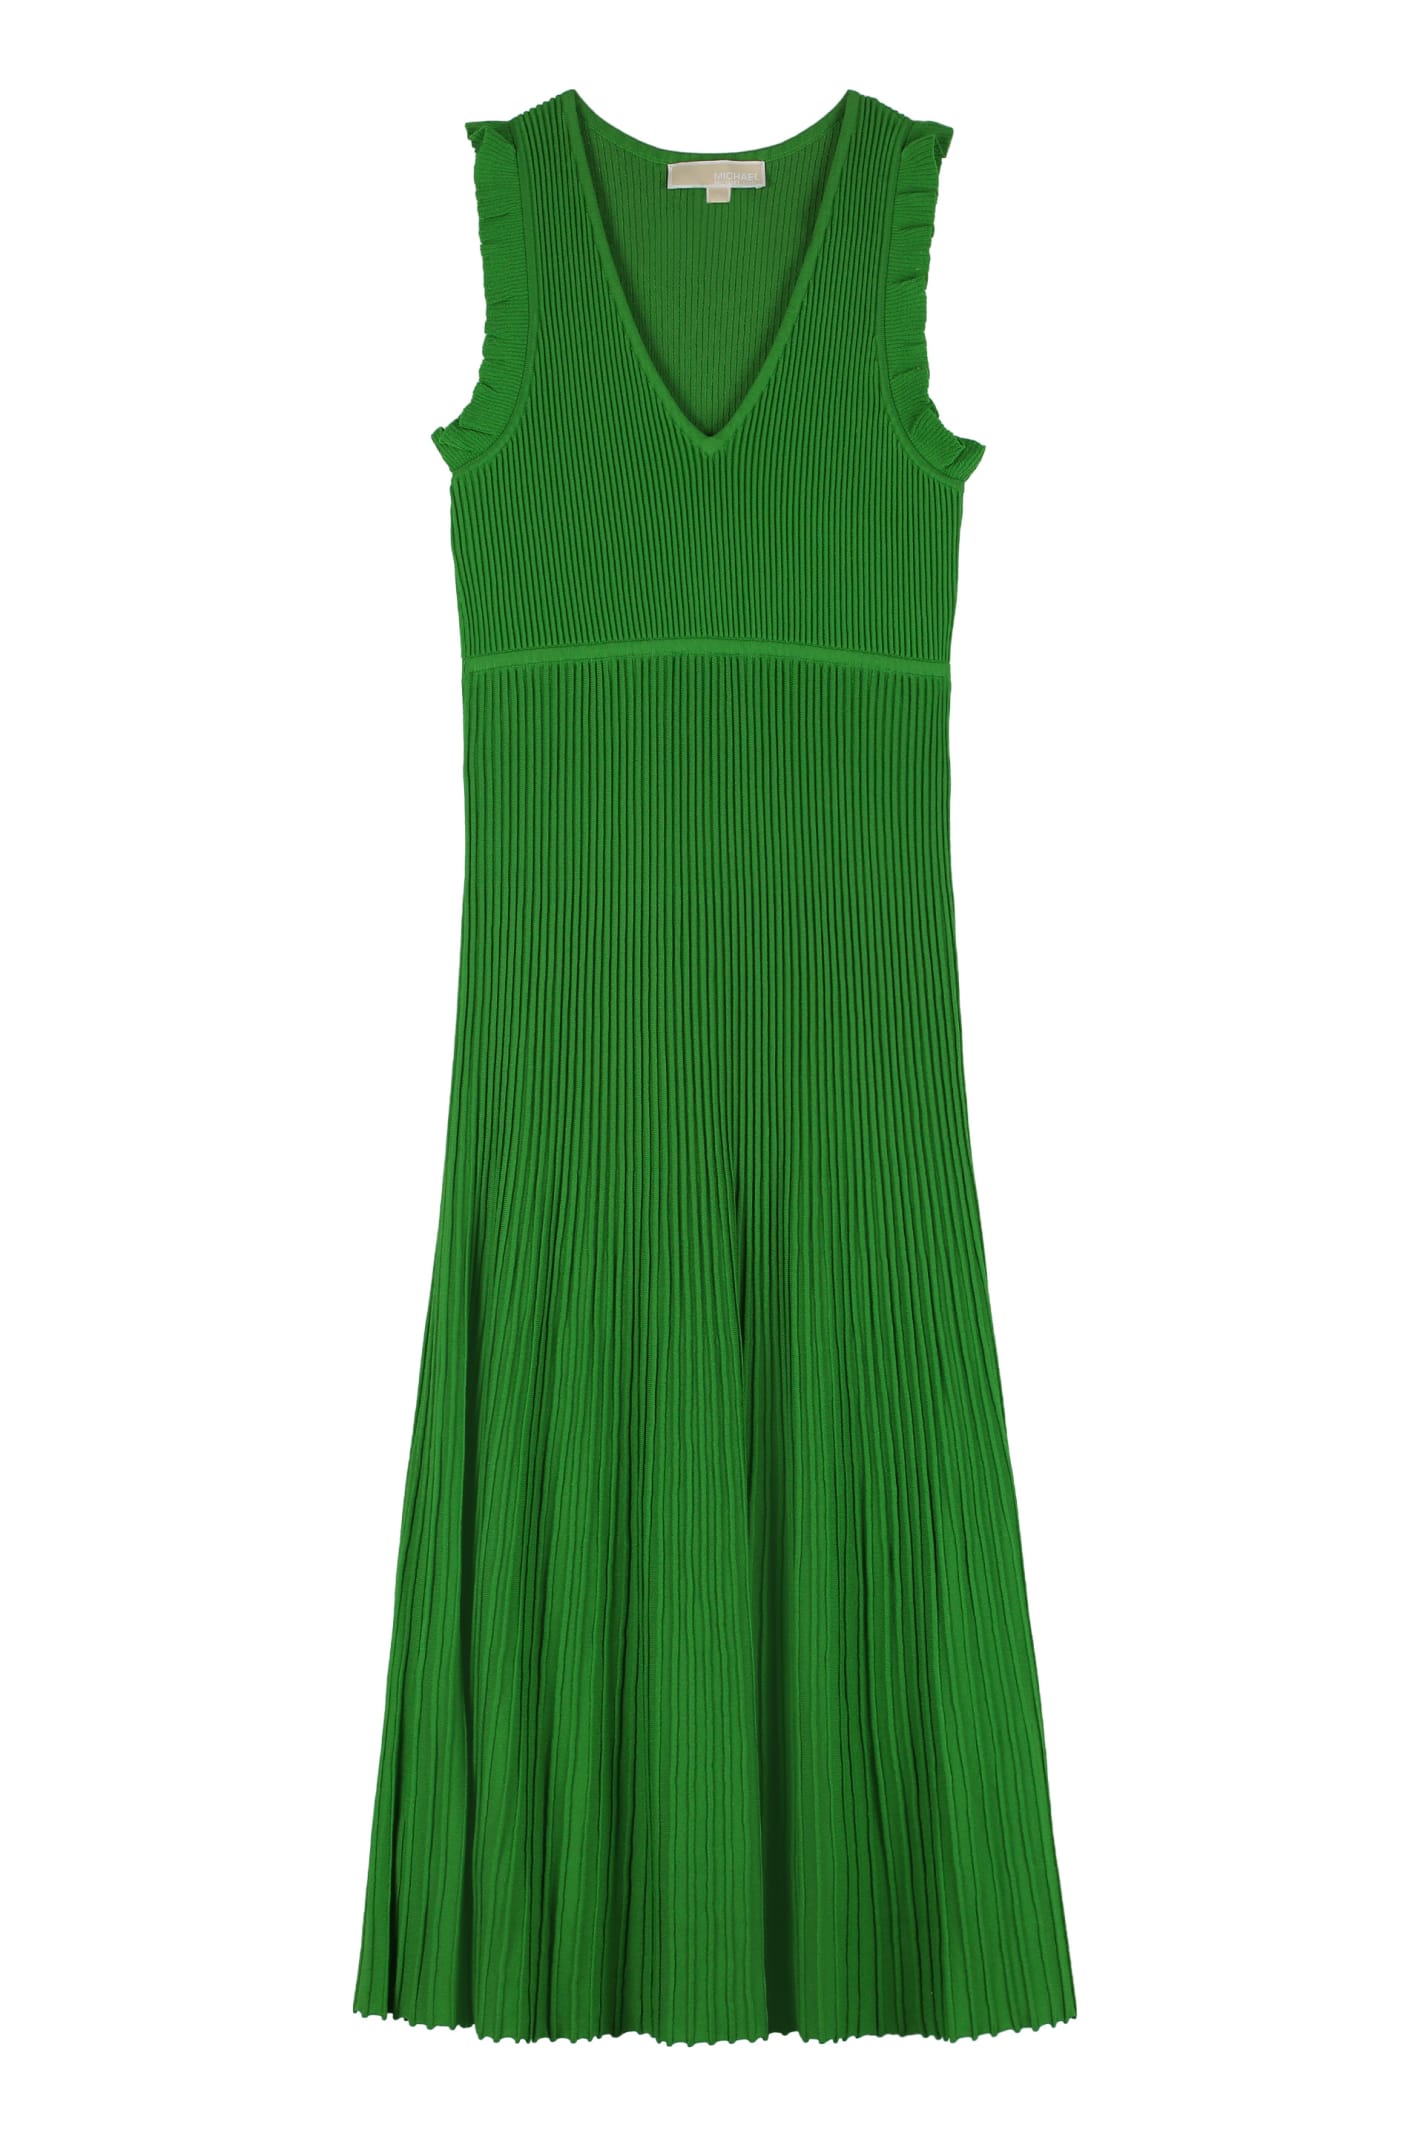 michael kors green dress